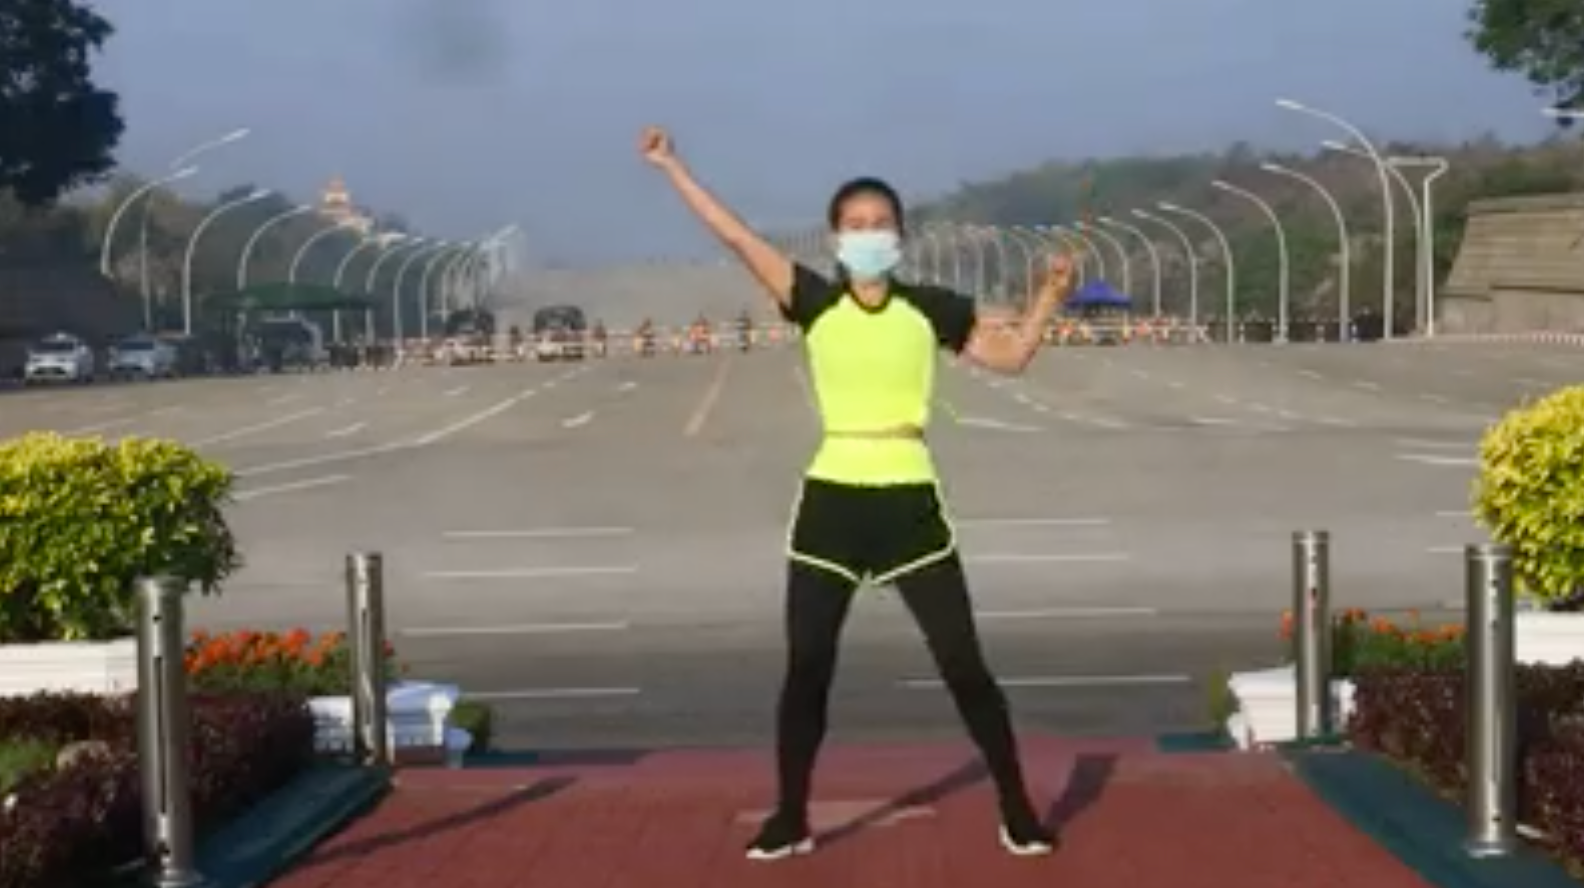 Un video che si diffonde rapidamente mostra una donna che sgorga nelle sue lezioni di aerobica mentre il colpo di stato del Myanmar sembra svolgersi dietro di lei